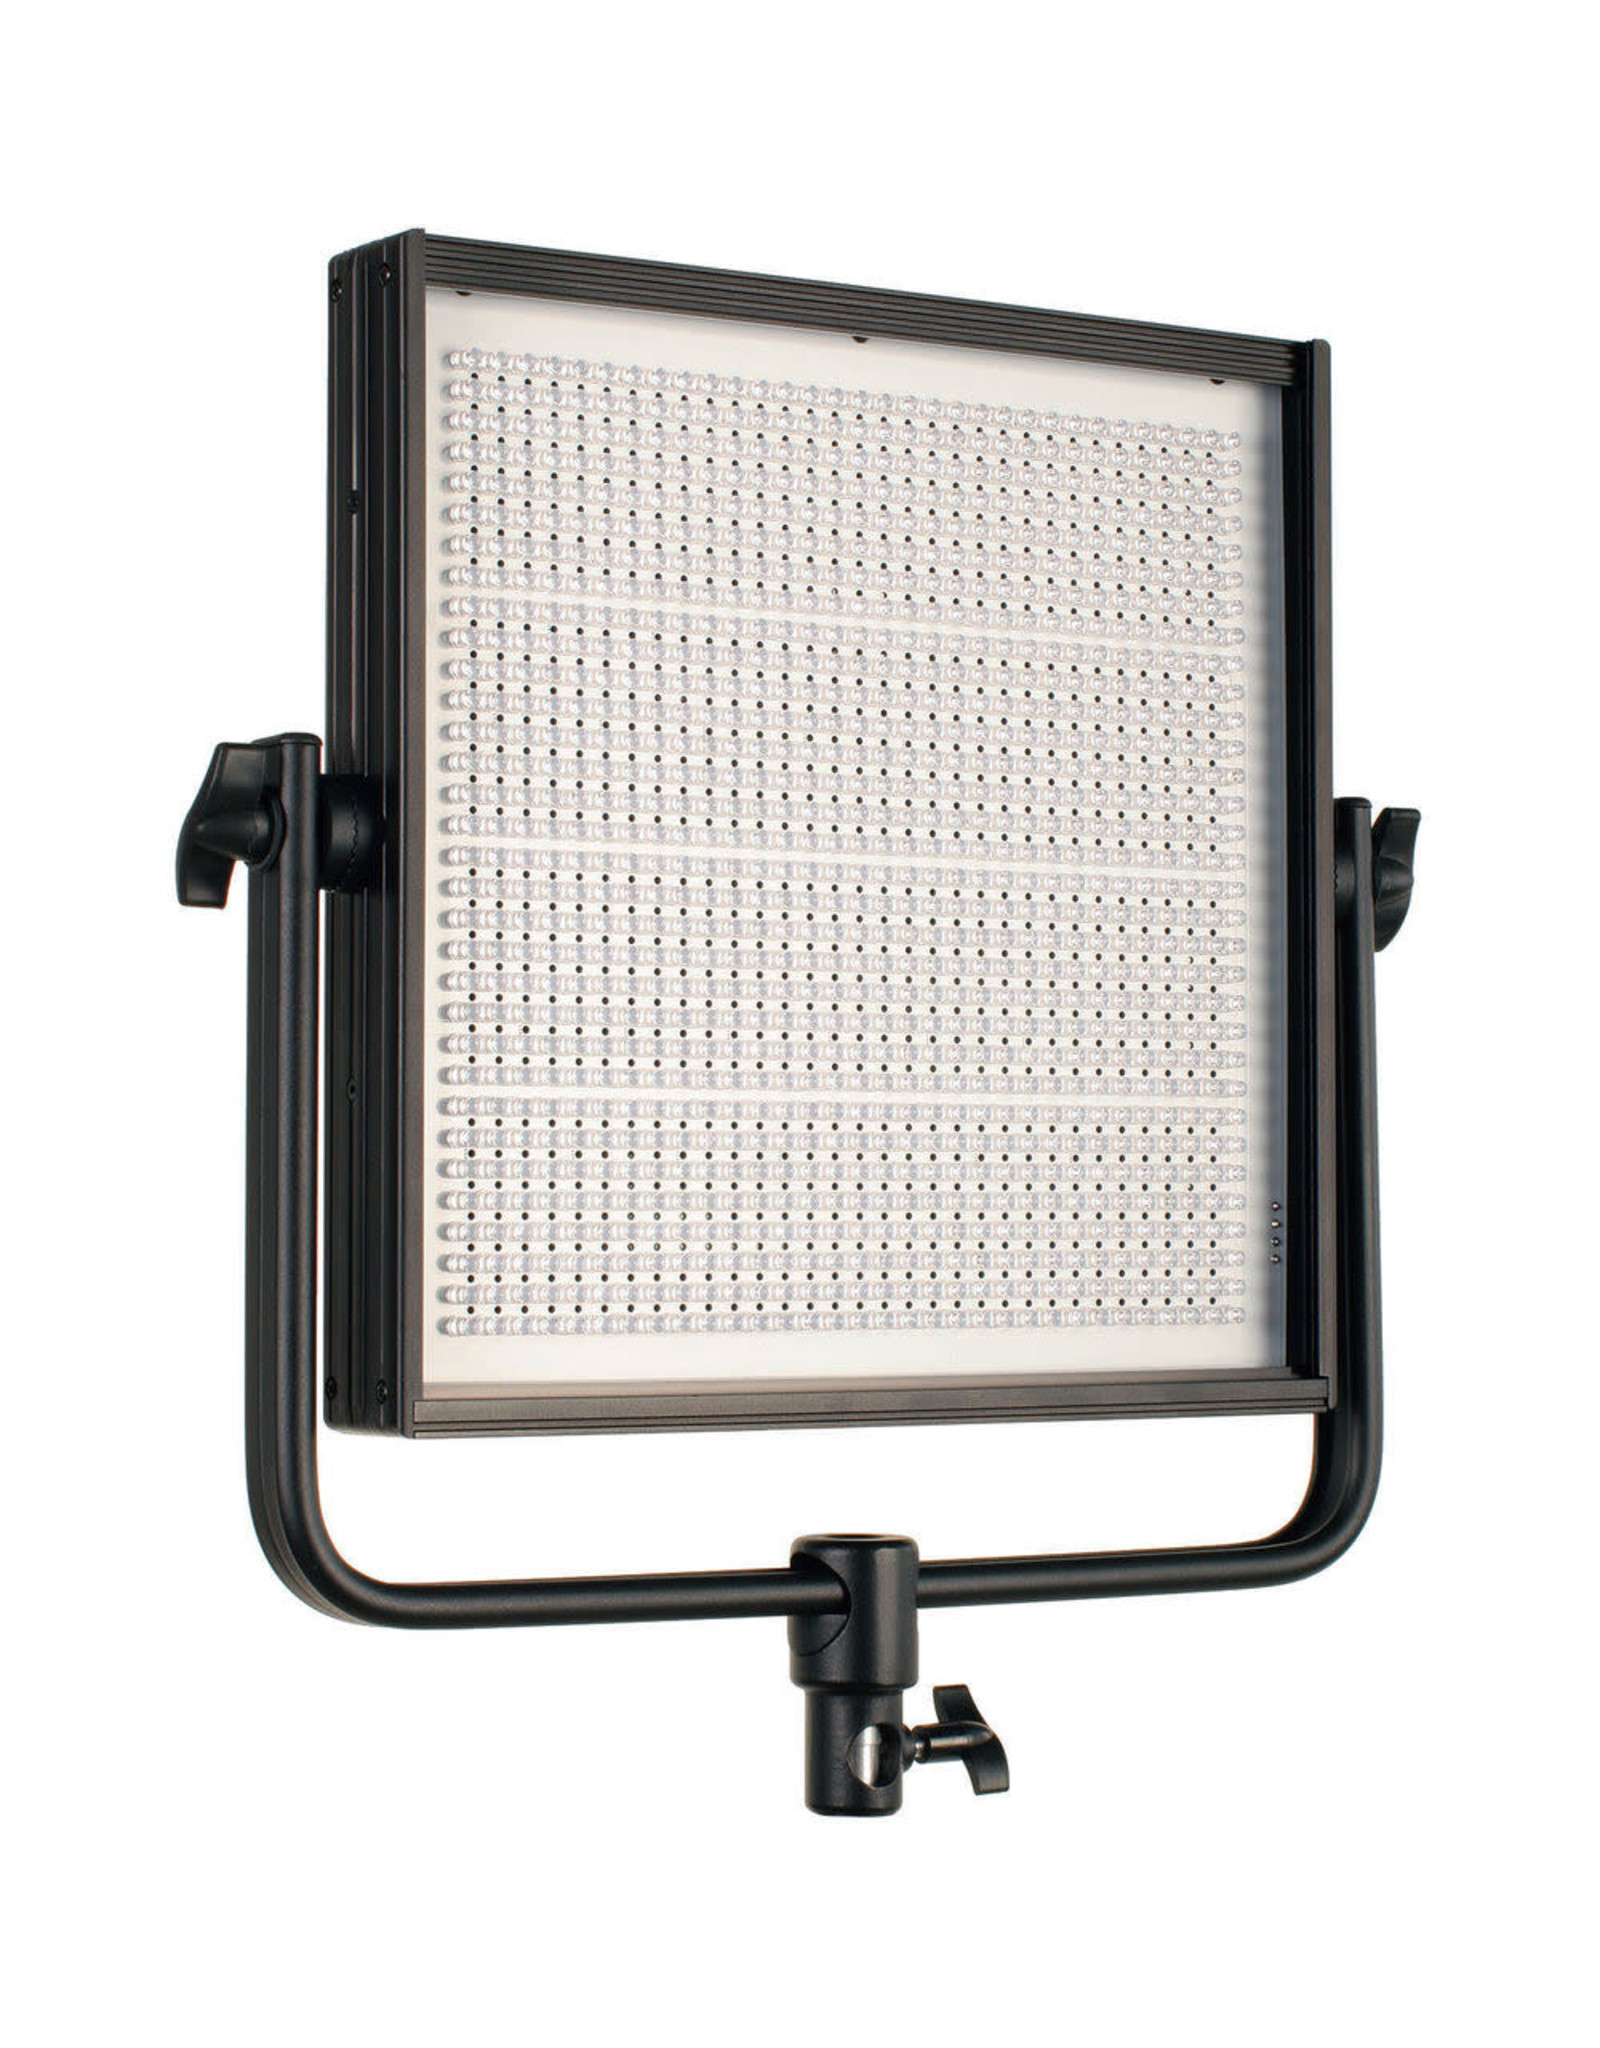 Cool-Lux CL1000 Pro LED Softlight Kit (Choose 1-2-or 3 Light Setup)